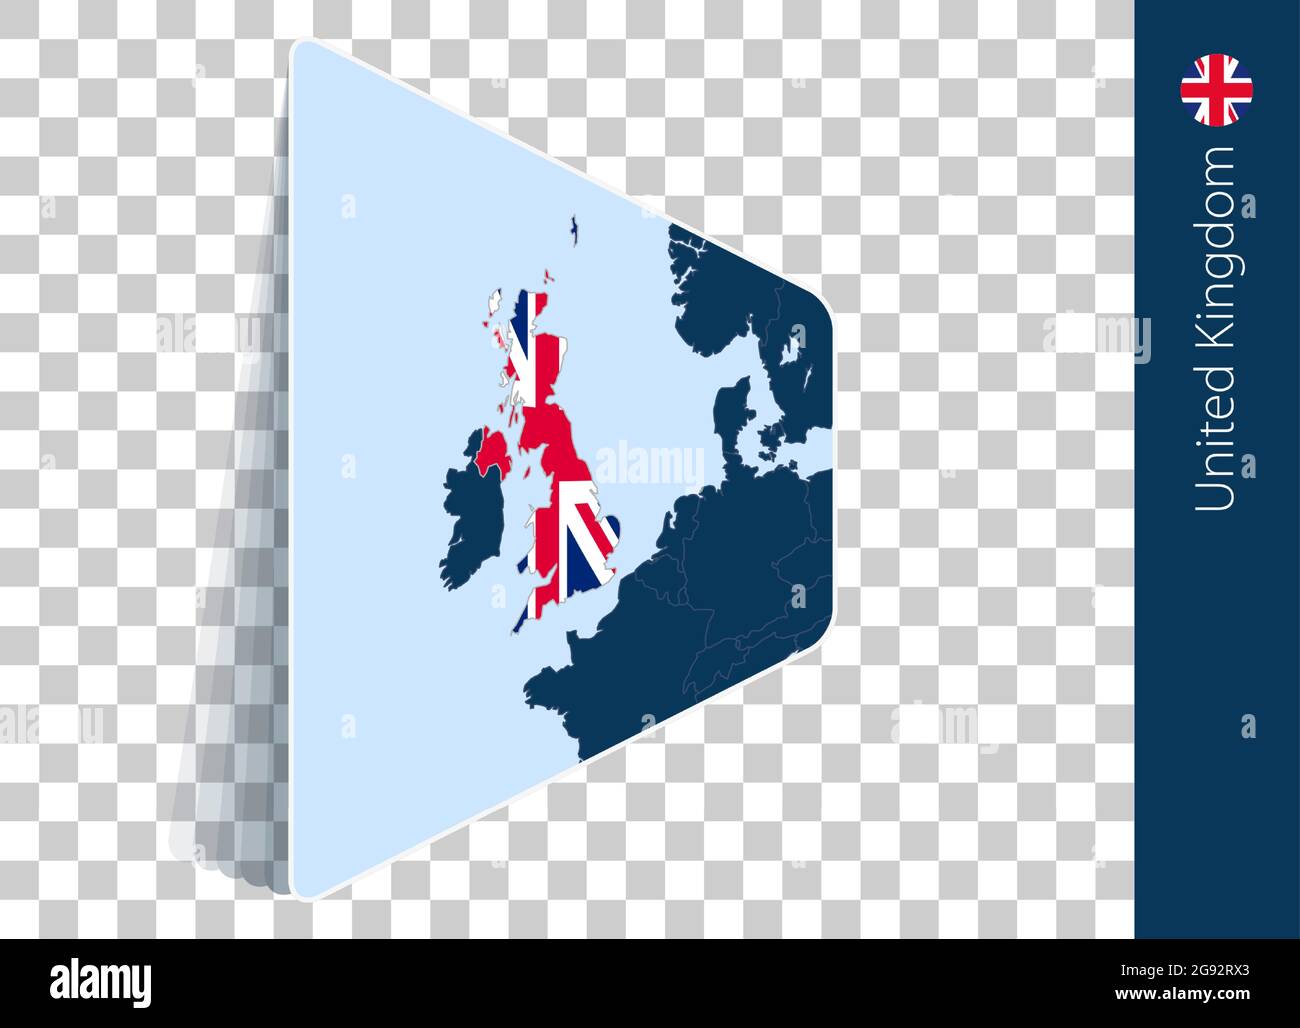 Karte und Flagge des Vereinigten Königreichs auf transparentem Hintergrund. Großbritannien auf blauer Vektorkarte hervorgehoben. Stock Vektor